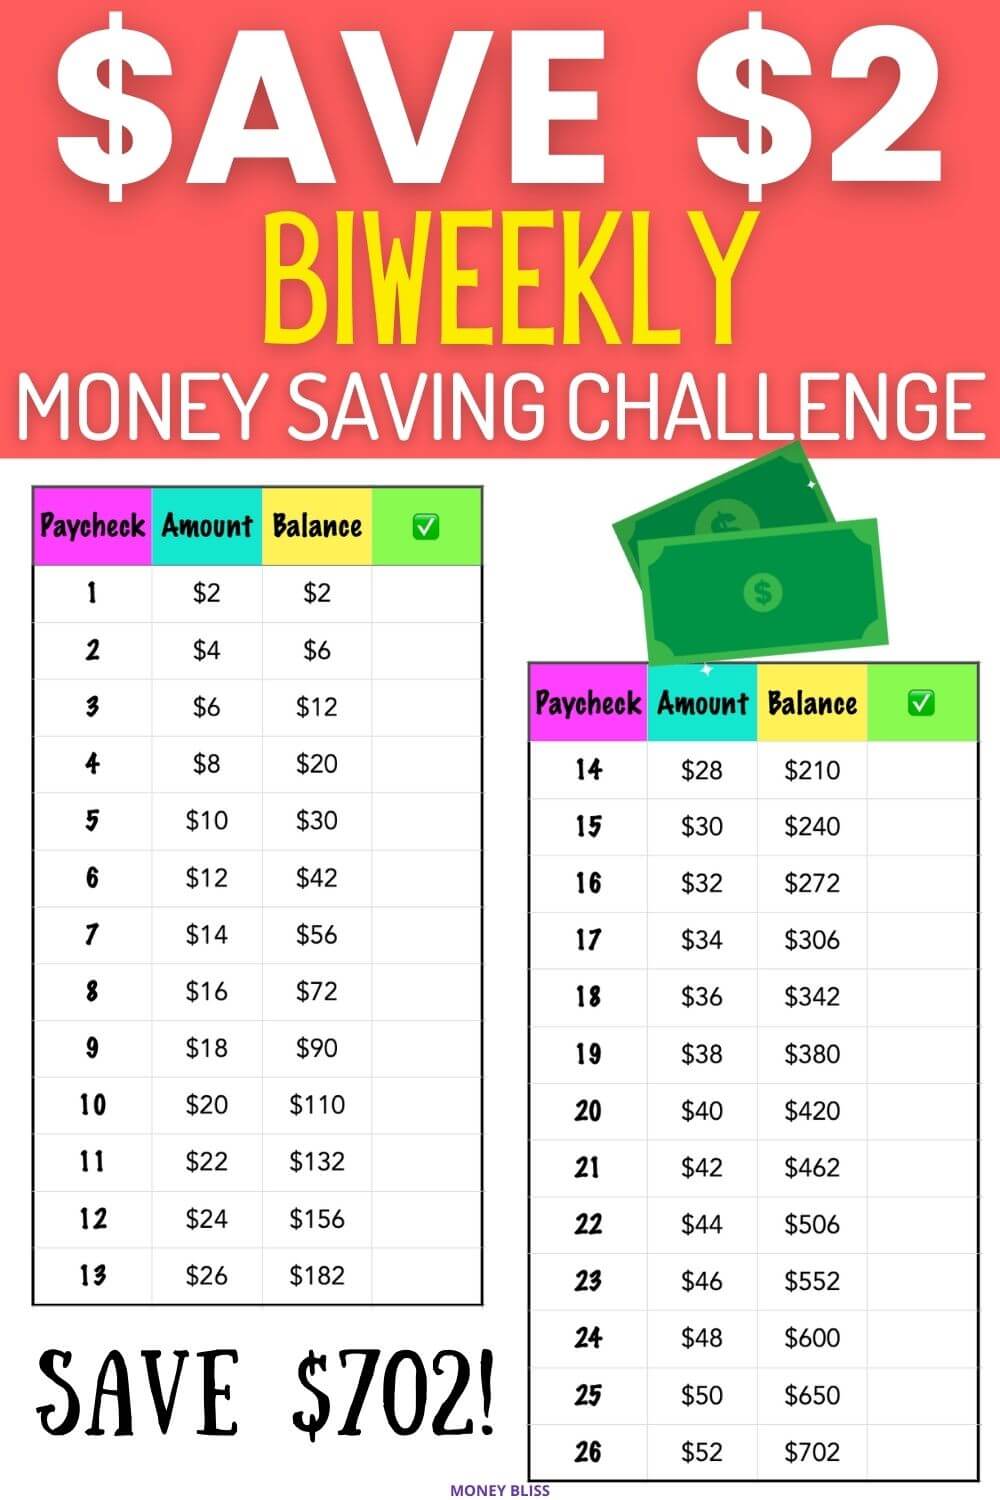 Biweekly $2 Money Saving Challenge